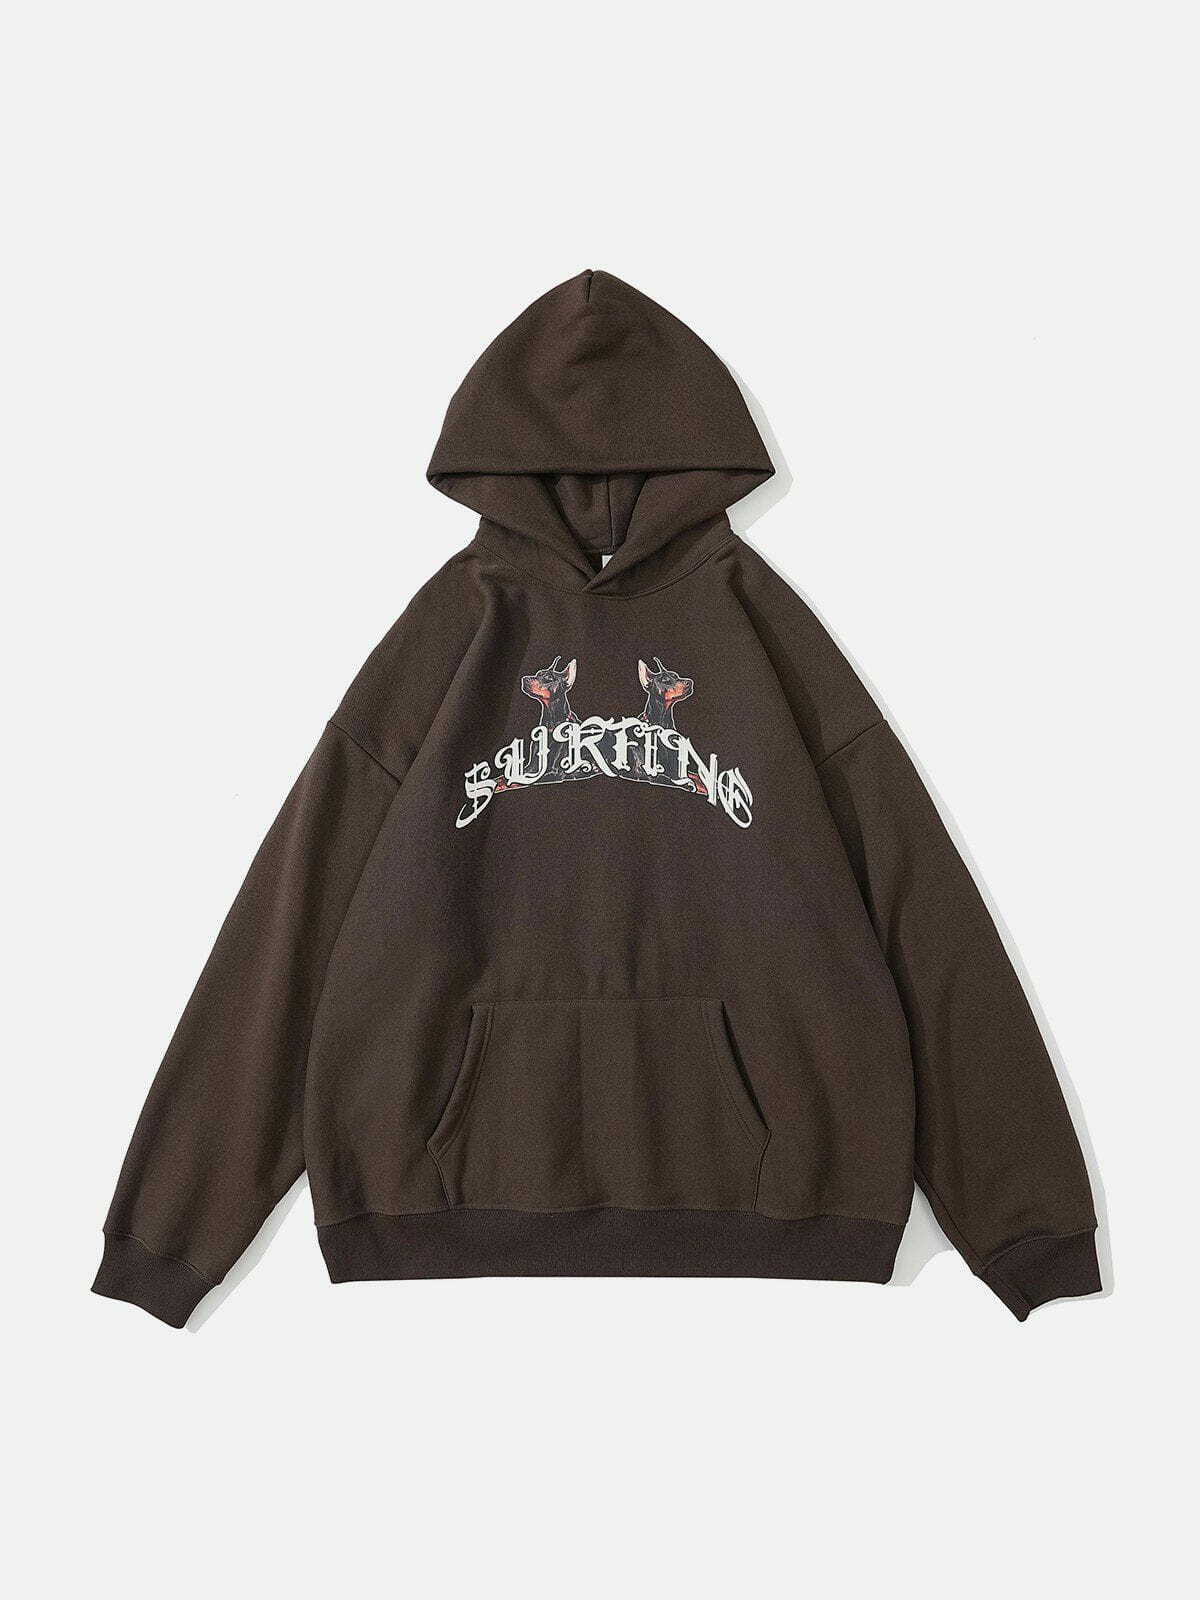 dynamic doberman print hoodie edgy streetwear 5069